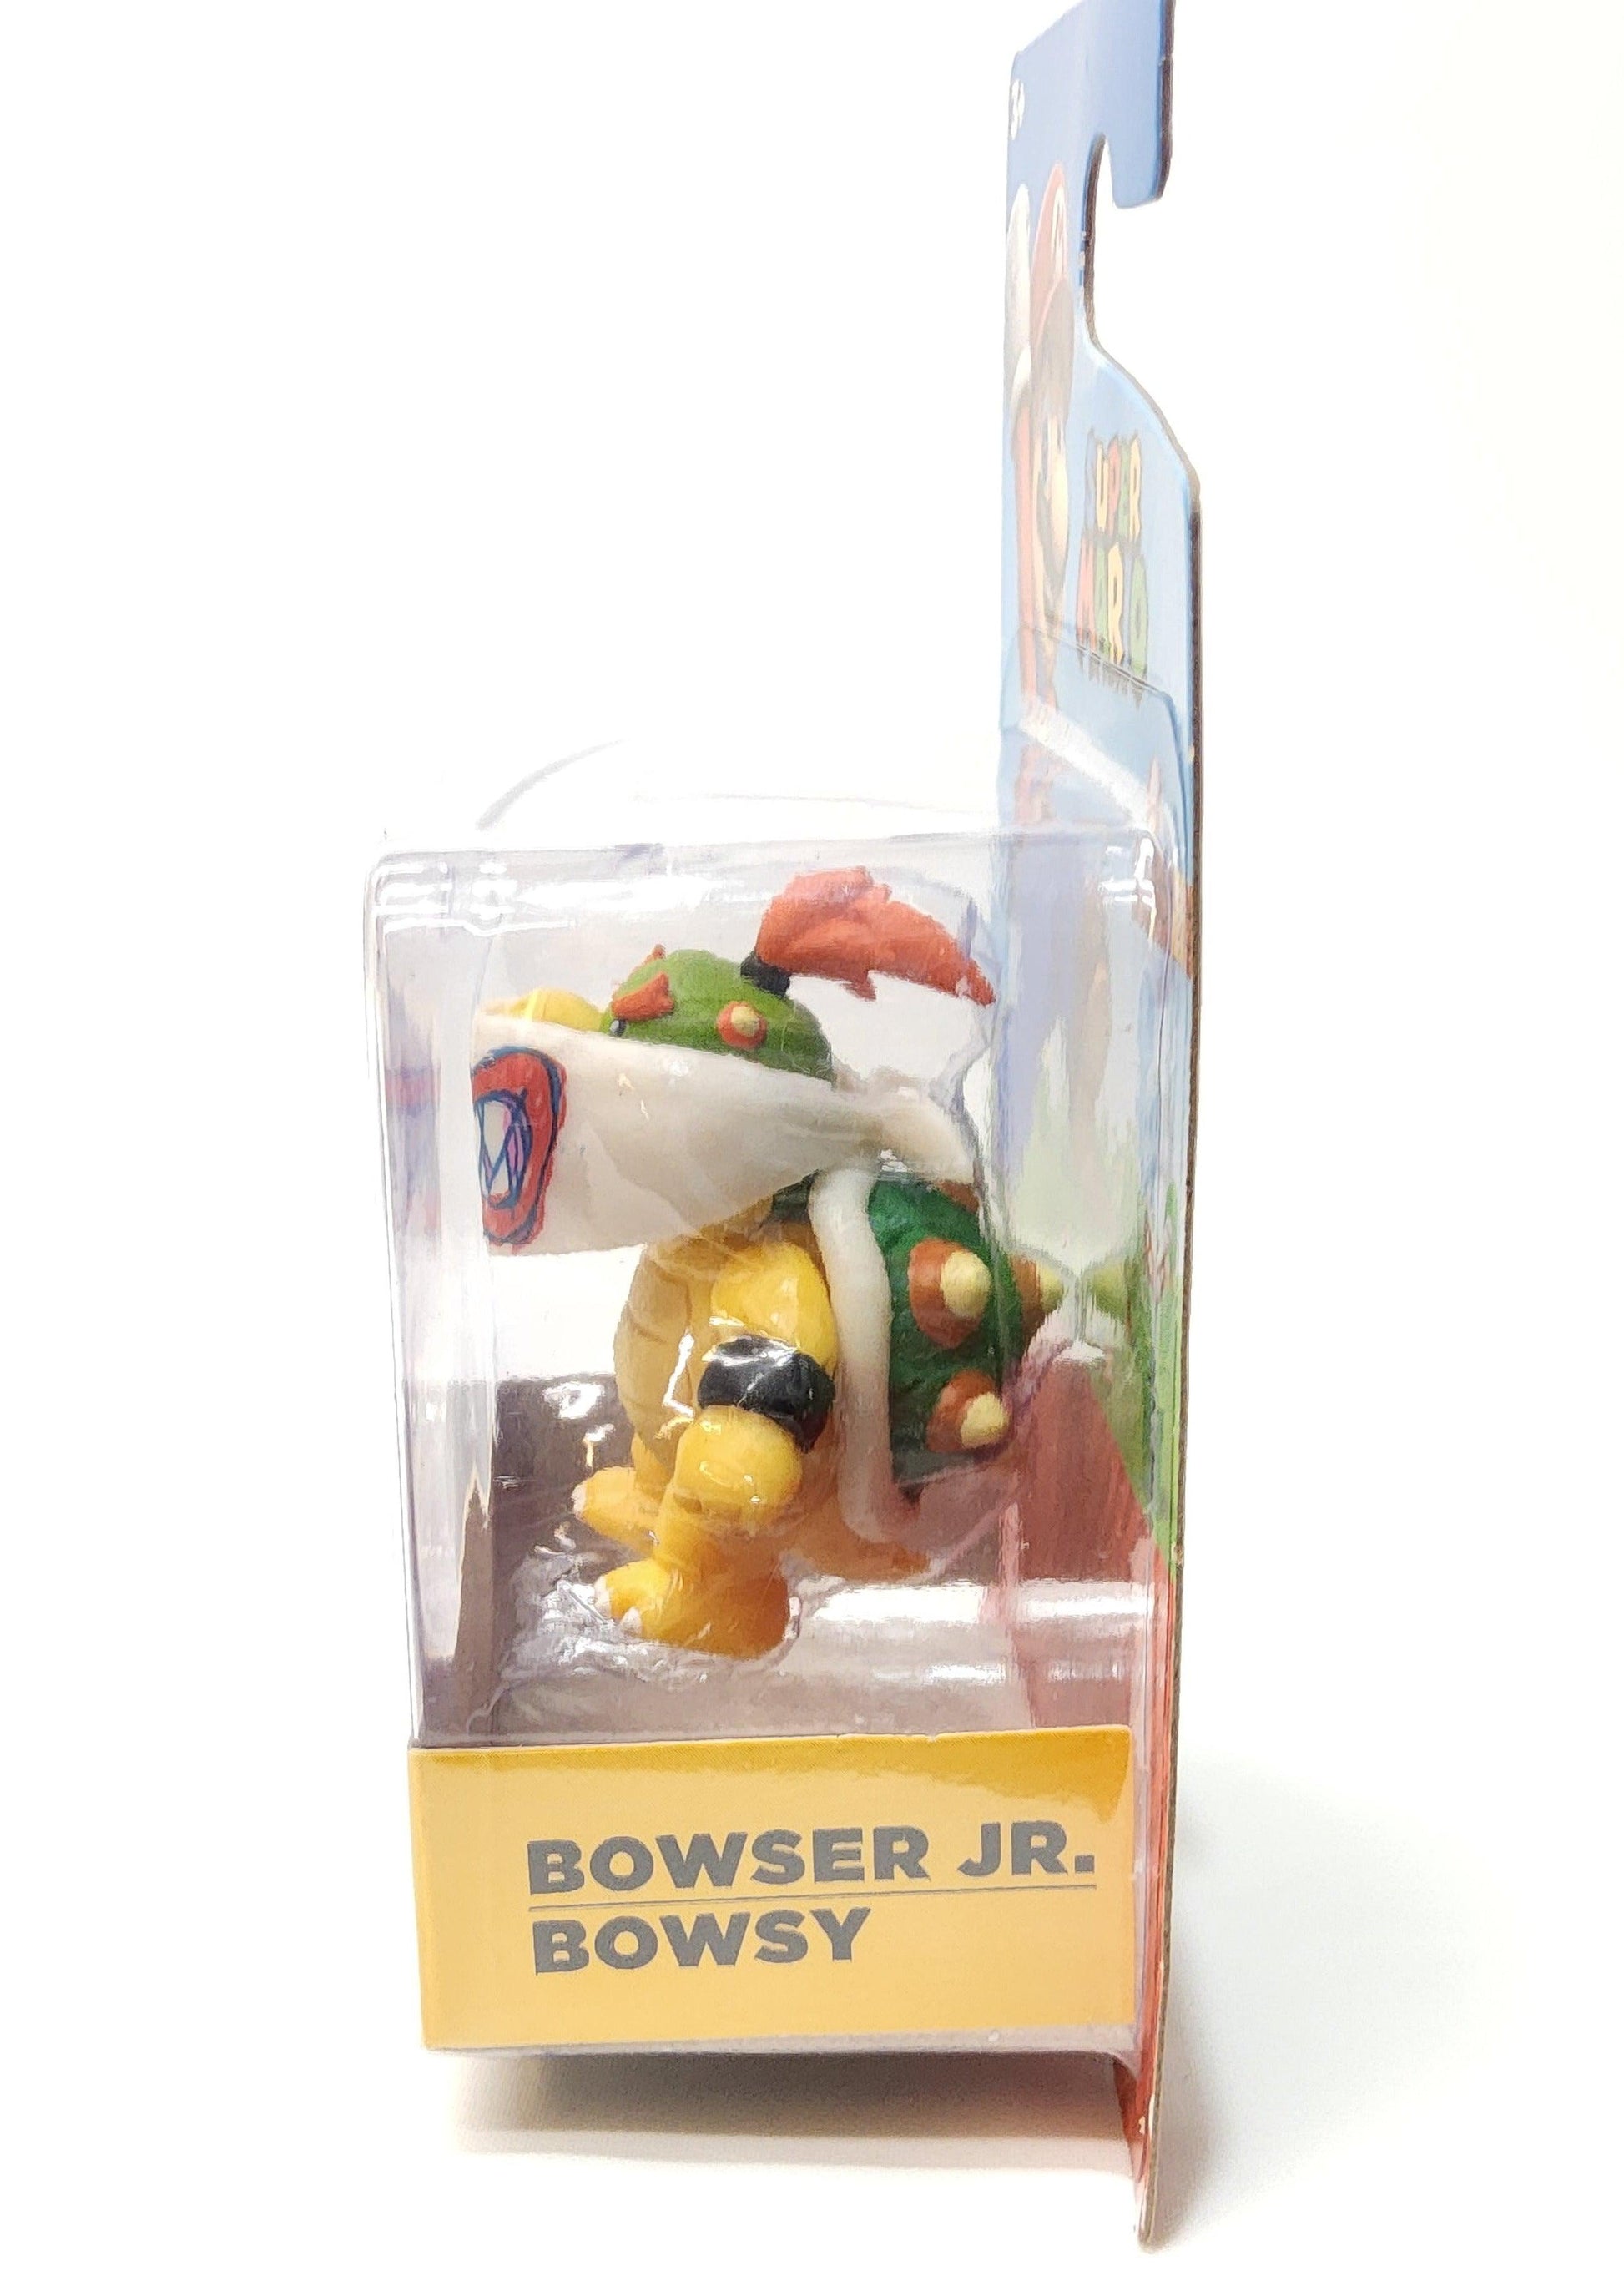 Jakks Pacific Super Mario 2.5" Bowser Jr. Bowsy Mini Action Figure - Logan's Toy Chest